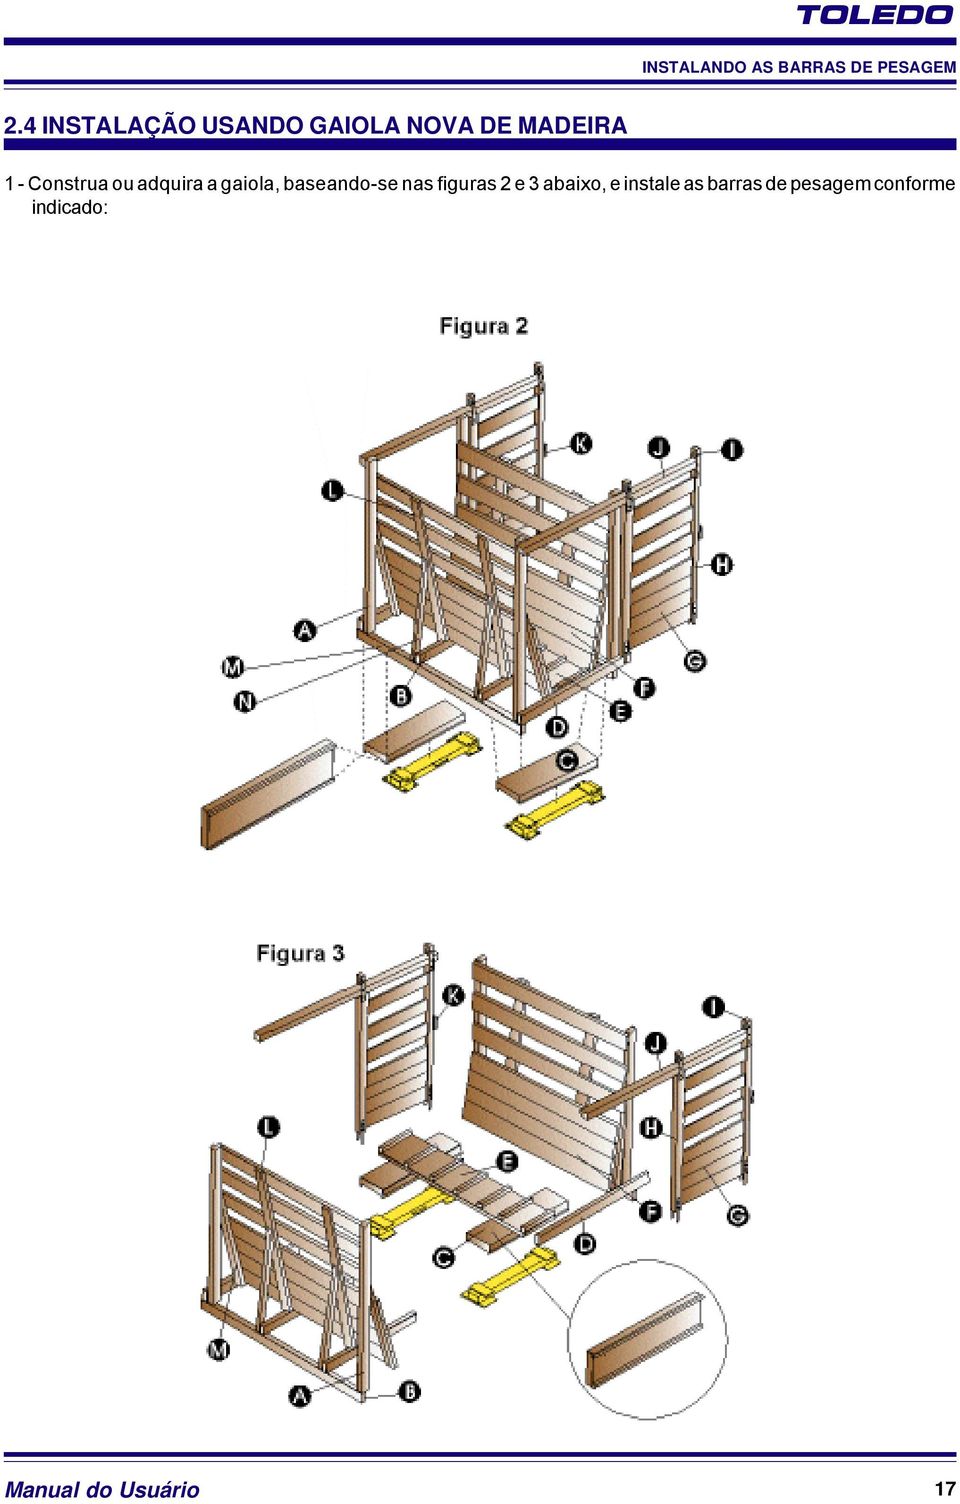 Construa ou adquira a gaiola, baseando-se nas figuras